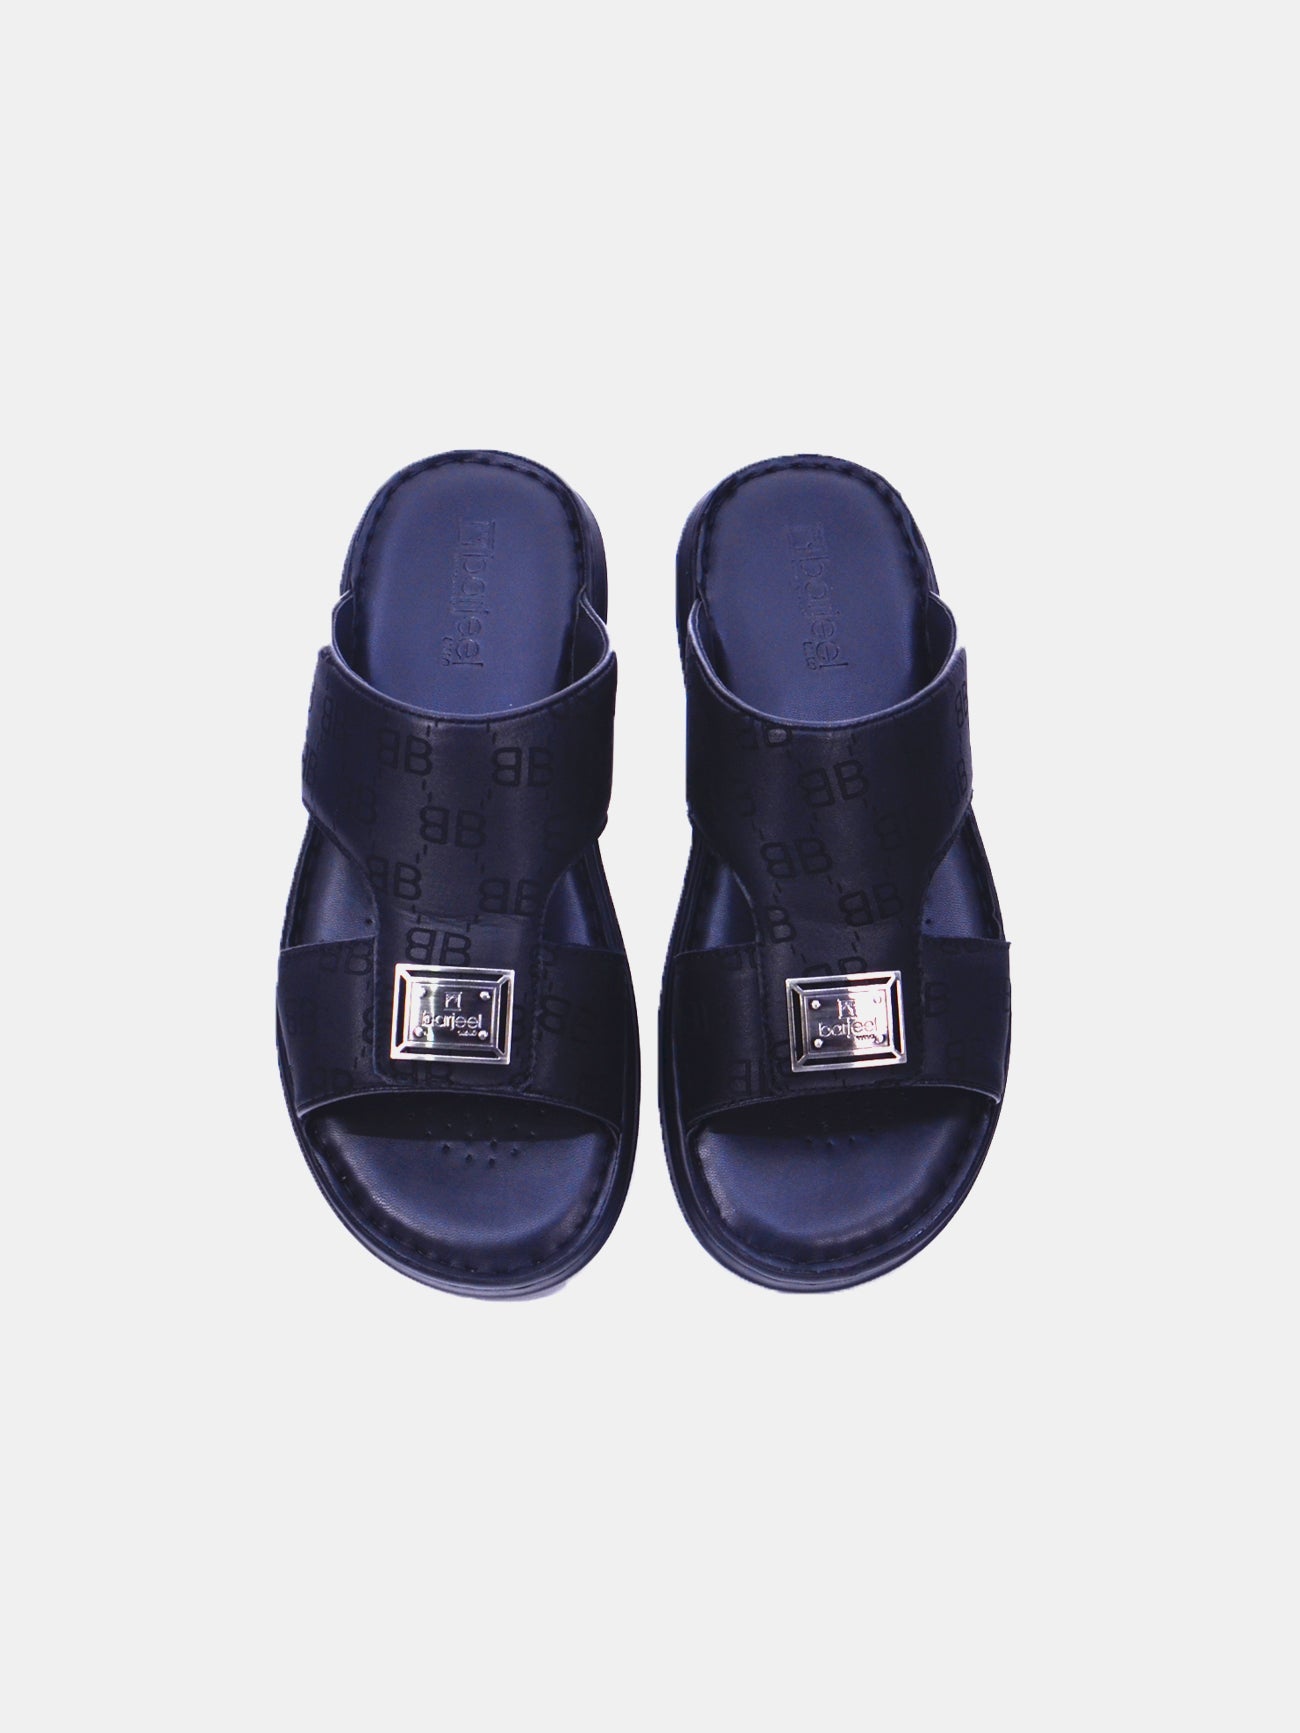 Barjeel Uno 21410-13 Men's Arabic Sandals #color_Black